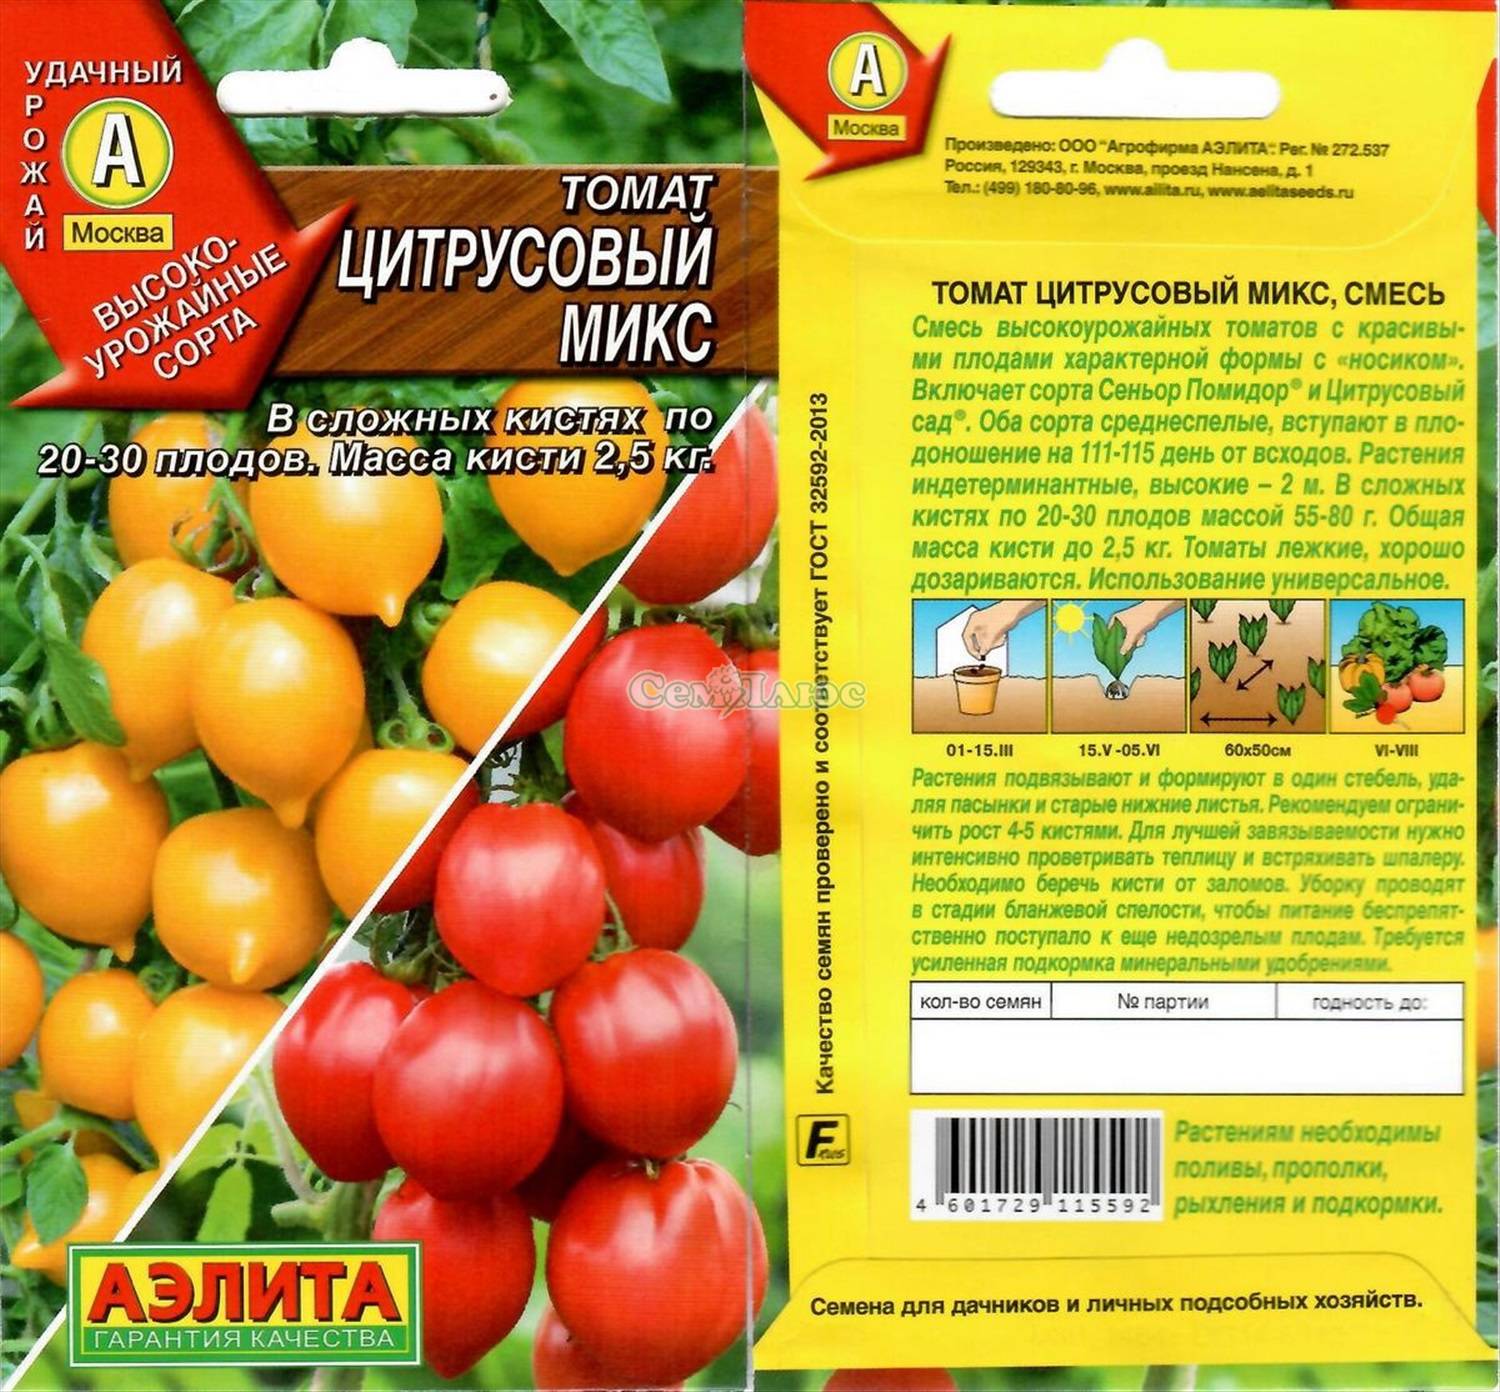 Фаворит дачников с высокой урожайностью и отличной репутацией — томат «буржуй» для открытого грунта и теплиц